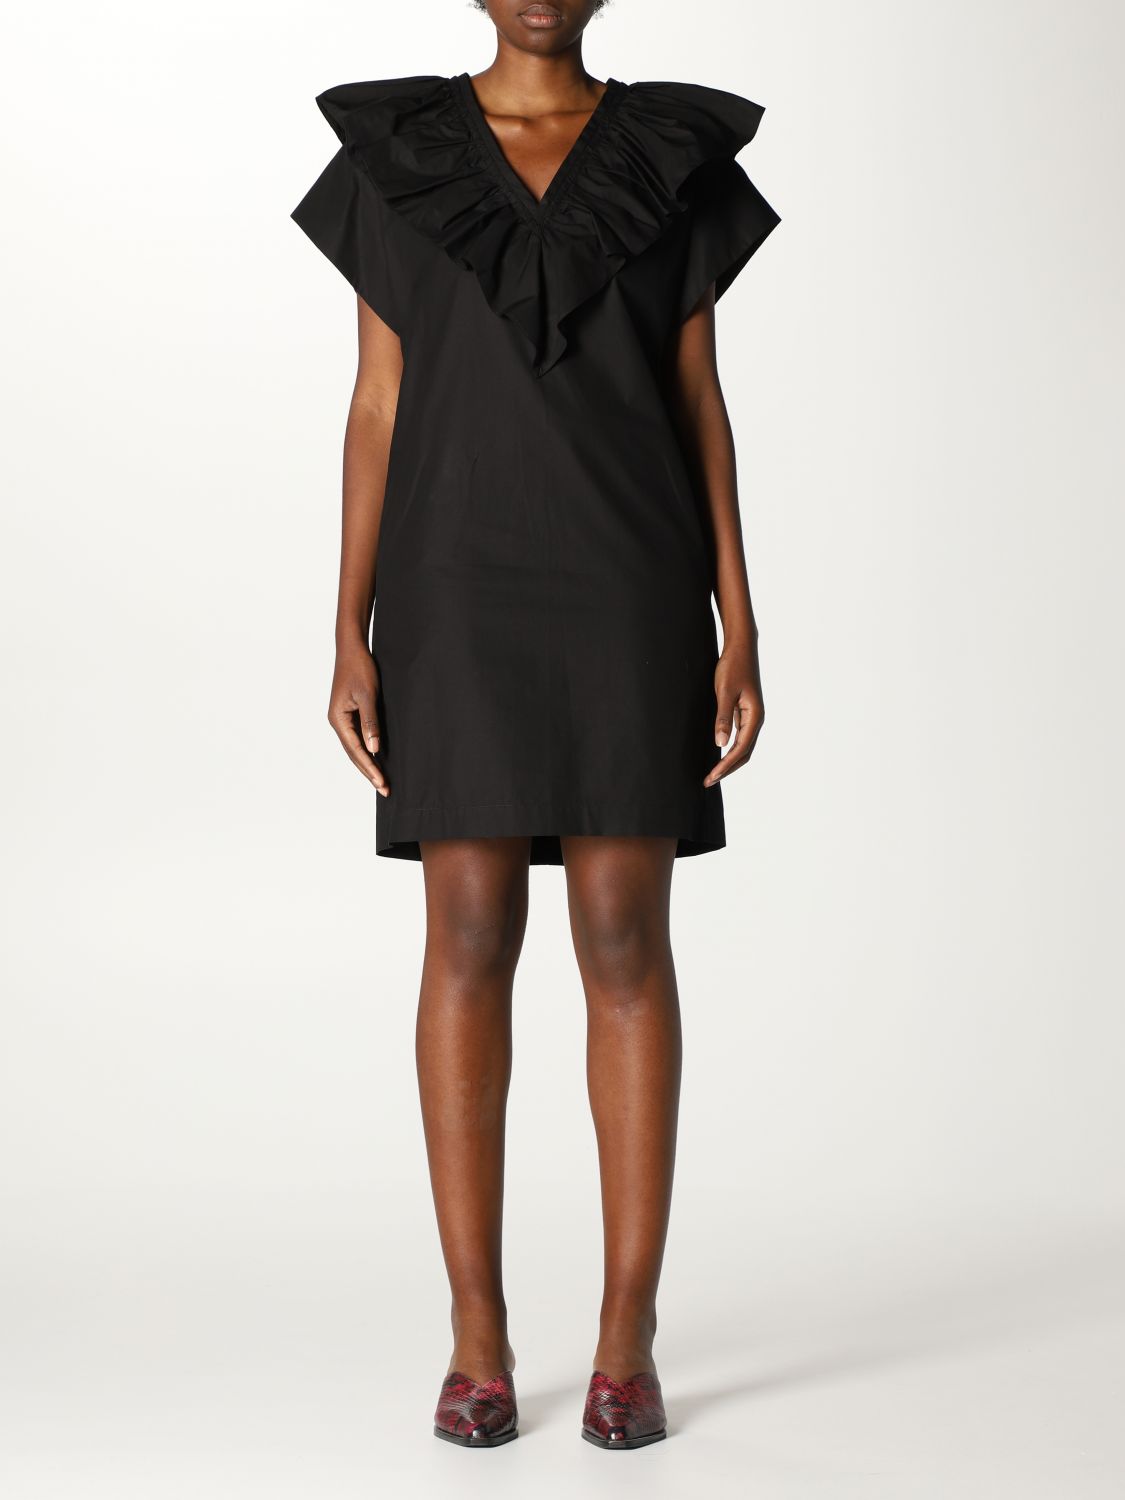 Dress Tela: Tela dress for women black 1